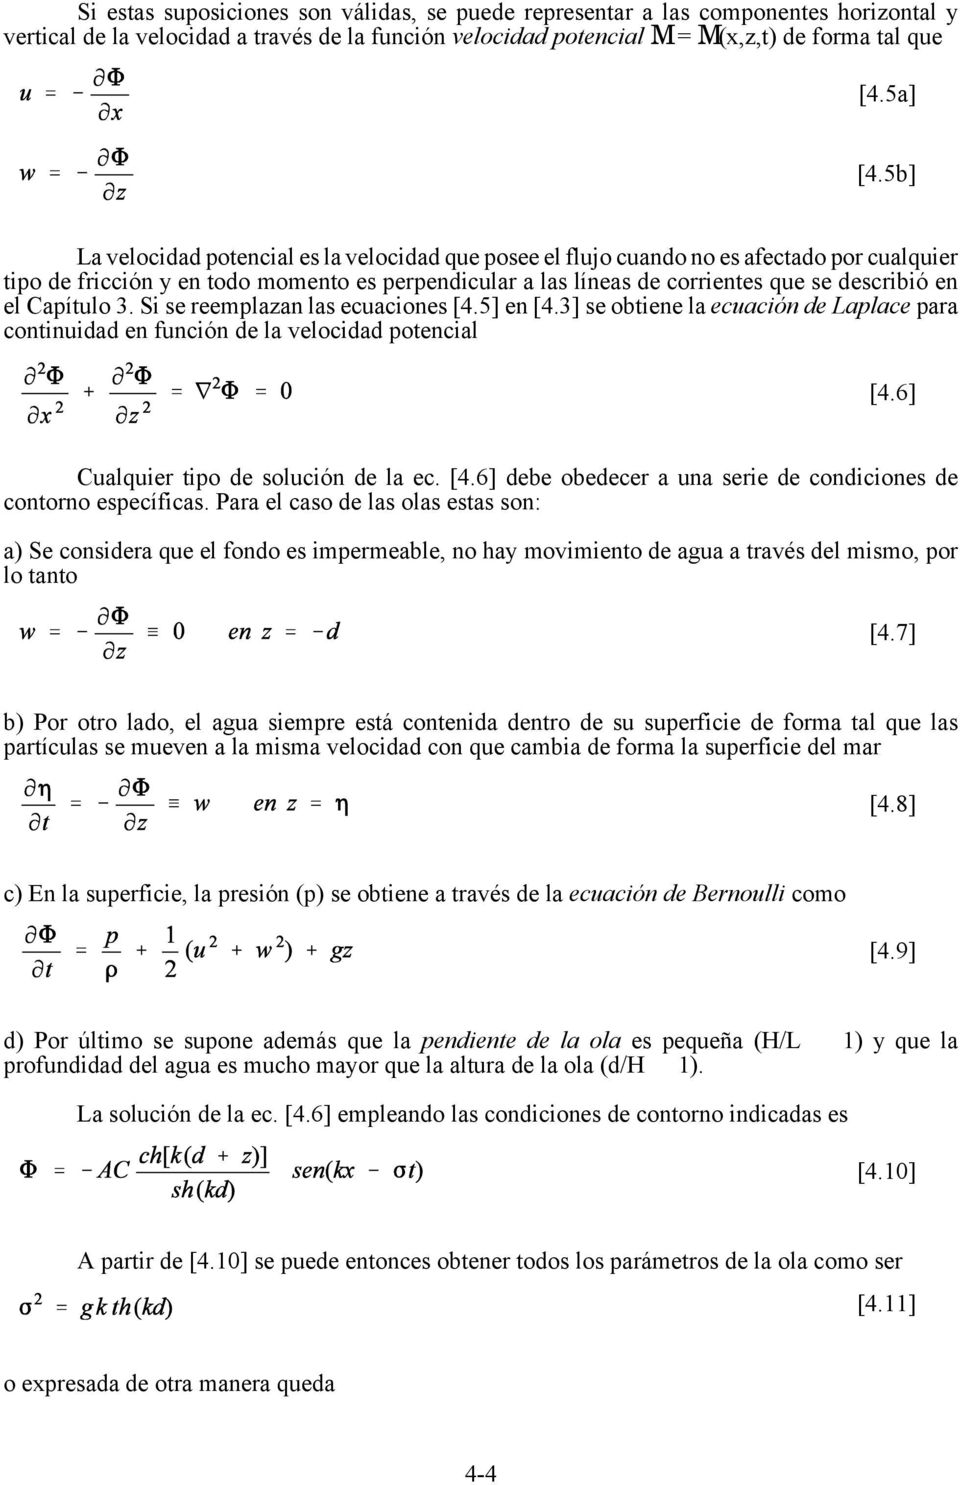 Capítulo 3. Si se reemplazan las ecuaciones [4.5] en [4.3] se obtiene la ecuación de Laplace para continuidad en función de la velocidad potencial [4.6] Cualquier tipo de solución de la ec. [4.6] debe obedecer a una serie de condiciones de contorno específicas.